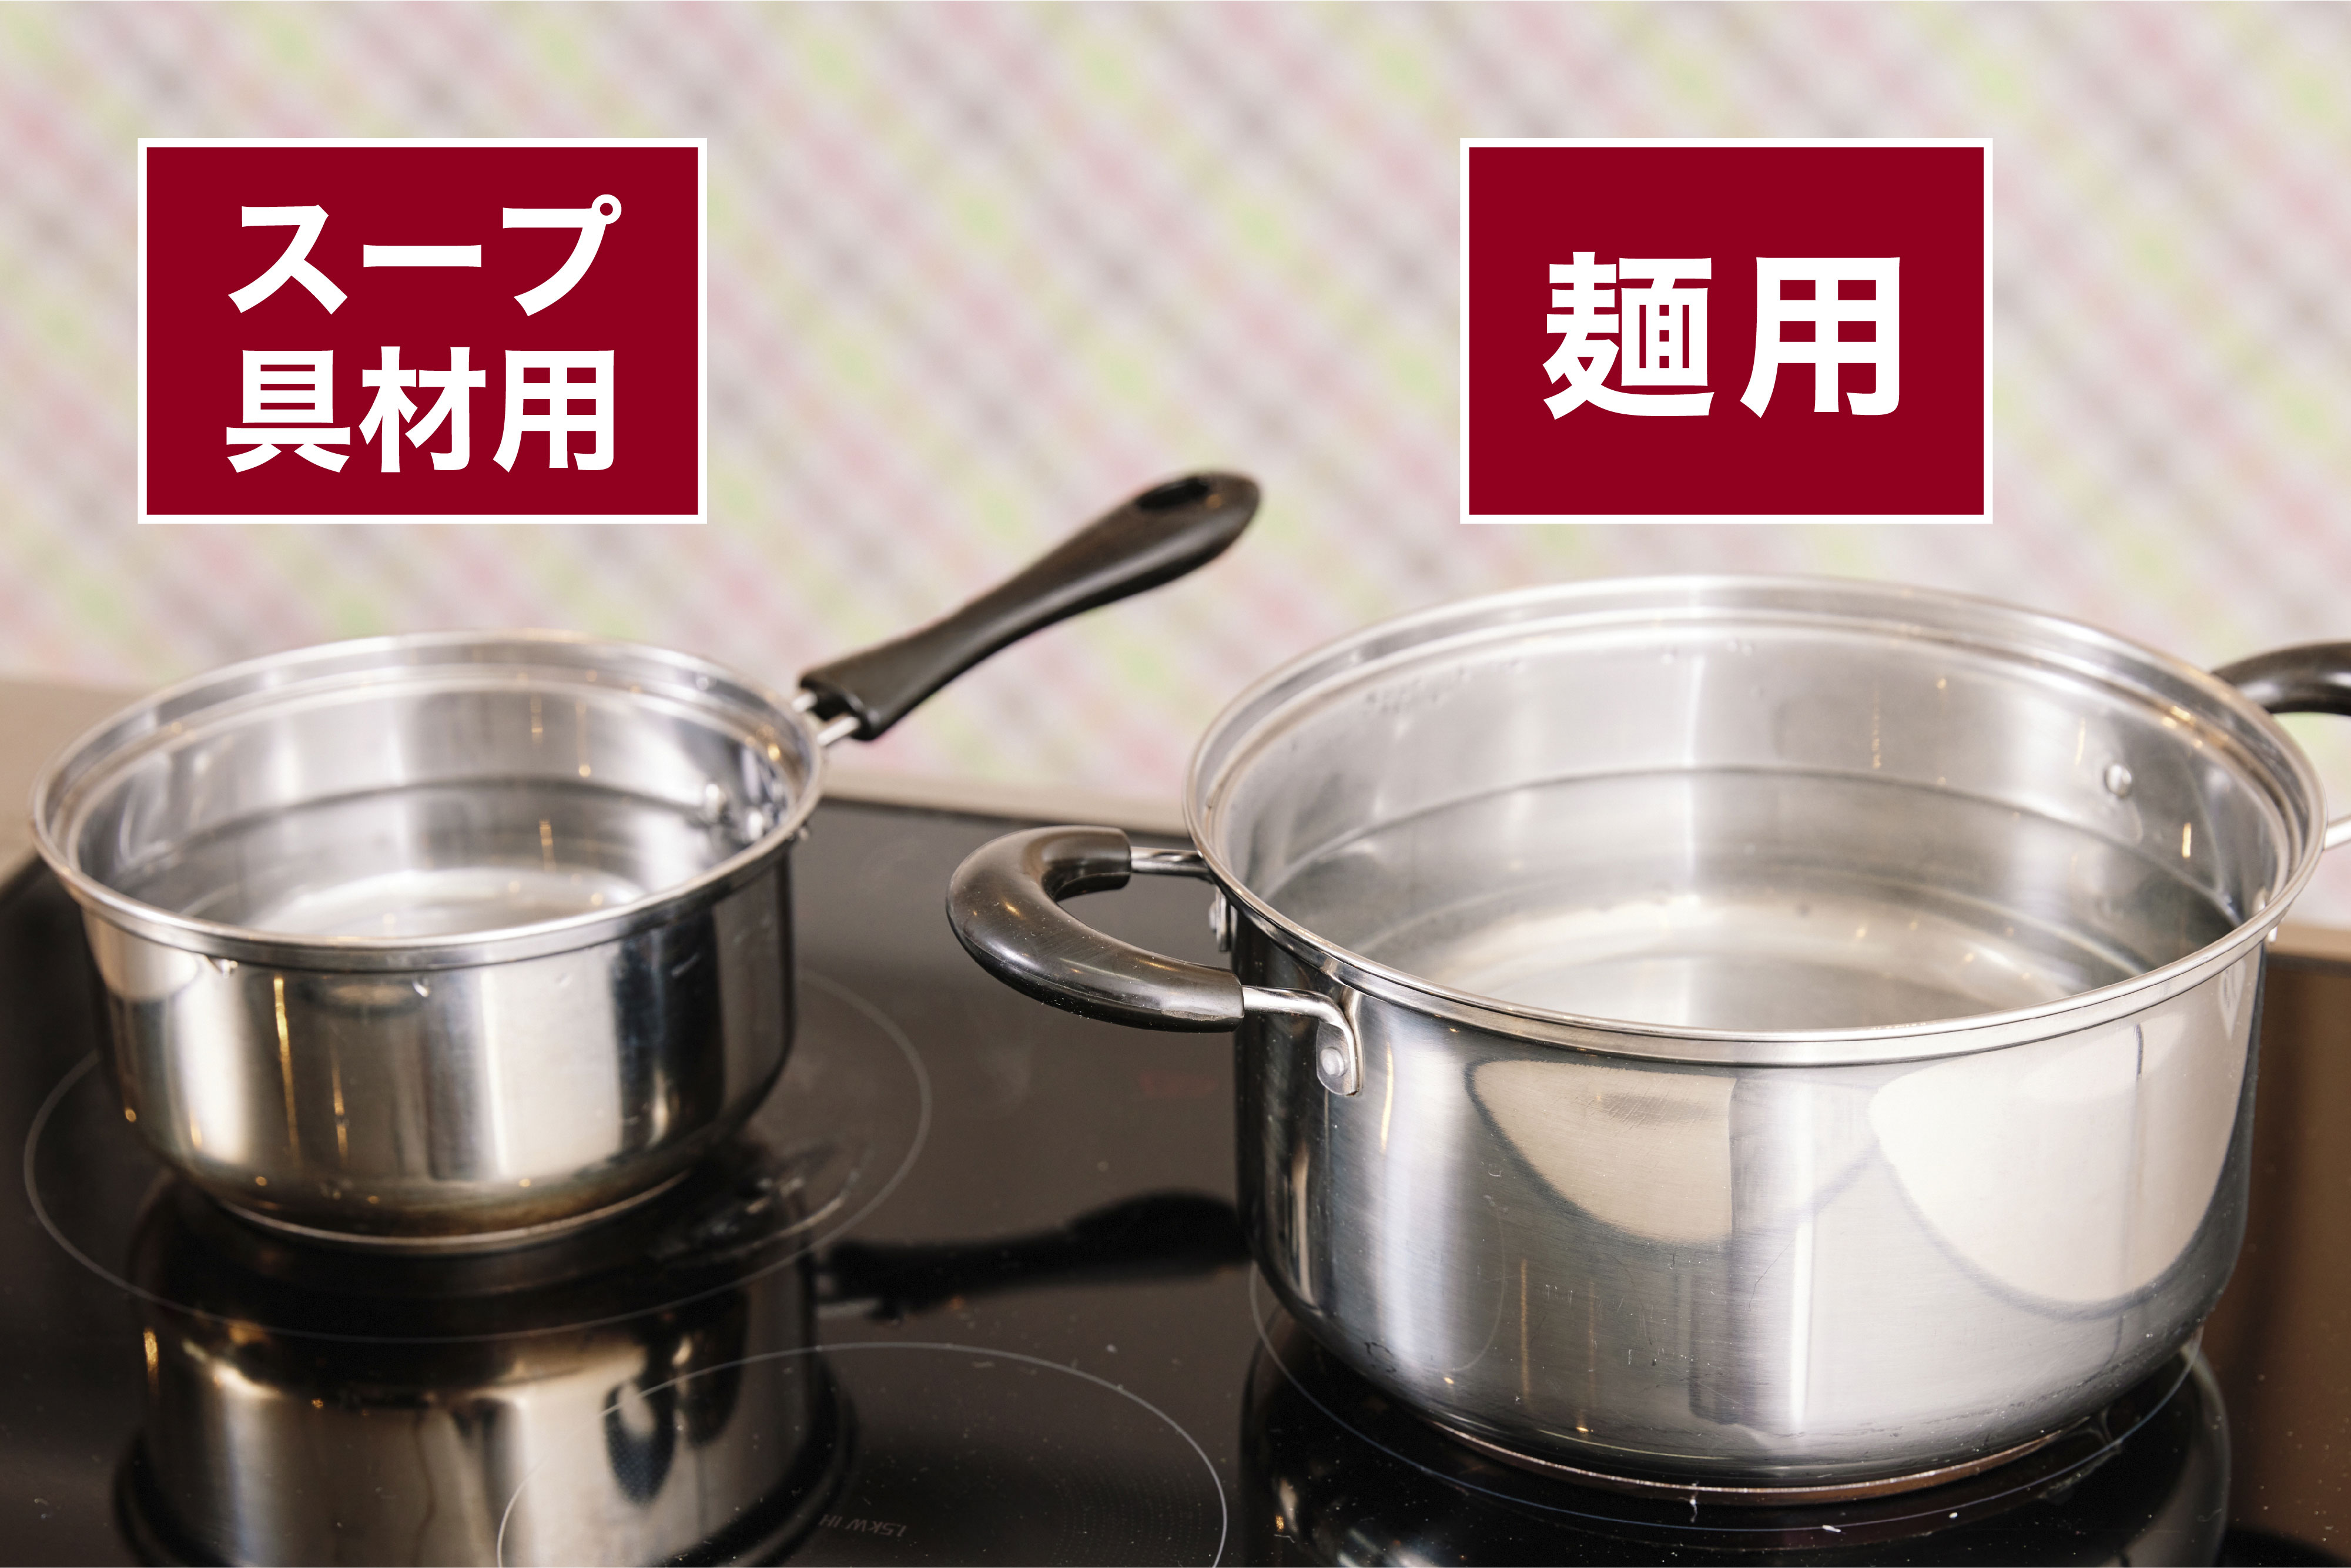 スープ具材用の鍋と麺用の鍋